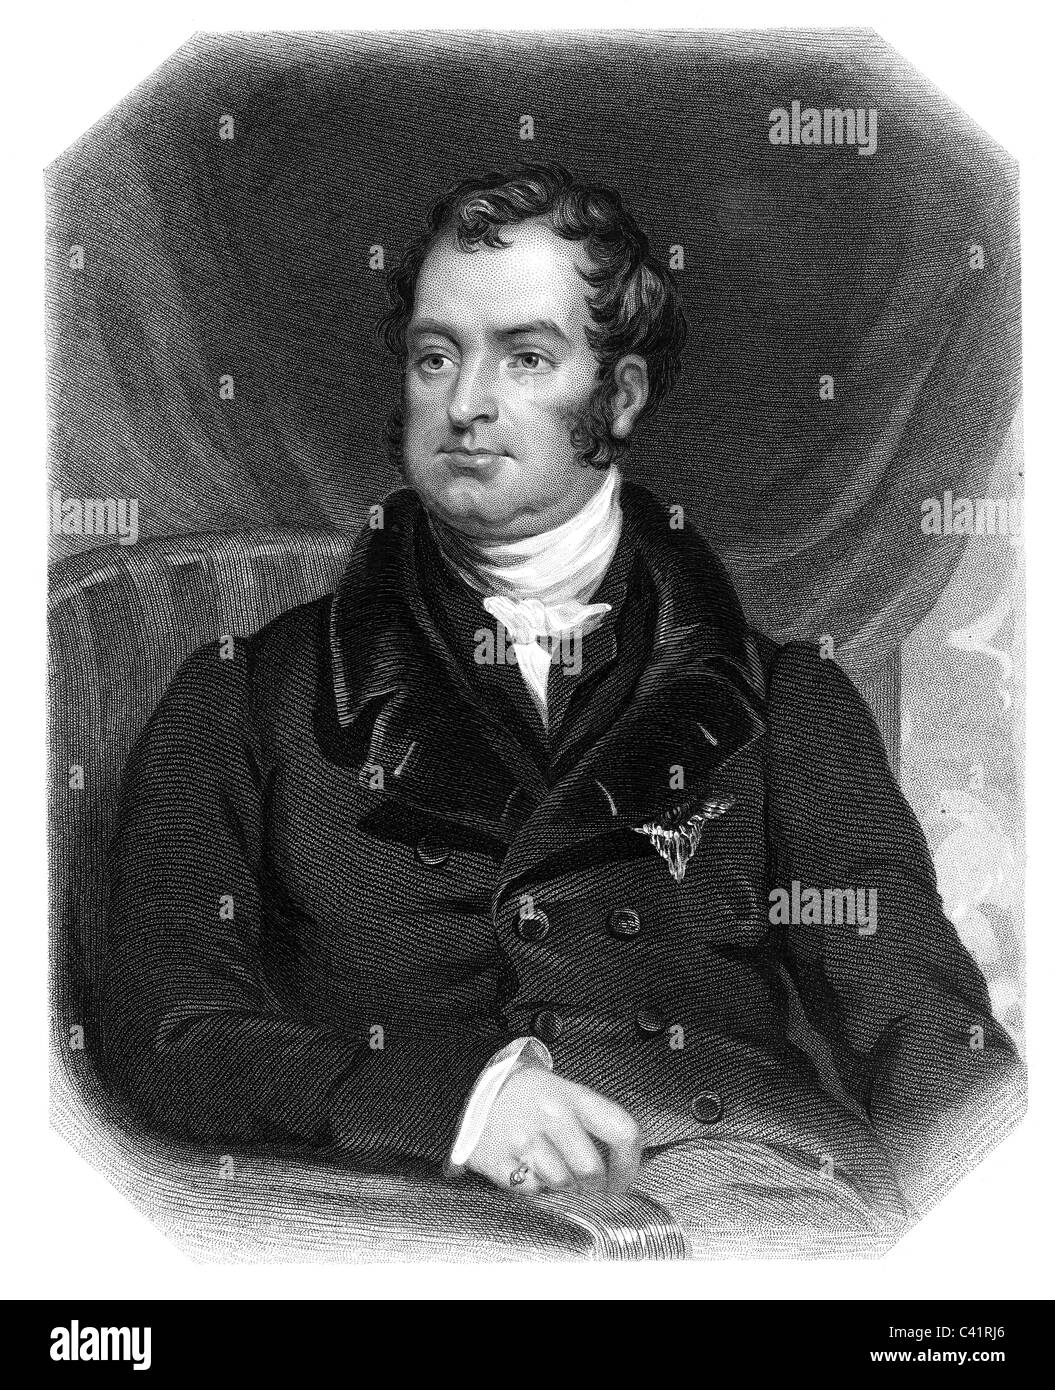 Spencer, John Charles, 30.5.1782 - 1.10.1845, 3e comte Spencer, homme d'État britannique, demi-longueur, gravure sur acier par J. Brown, après avoir tracé par J. Stewart, 19e siècle, l'artiste n'a pas d'auteur pour être effacé Banque D'Images